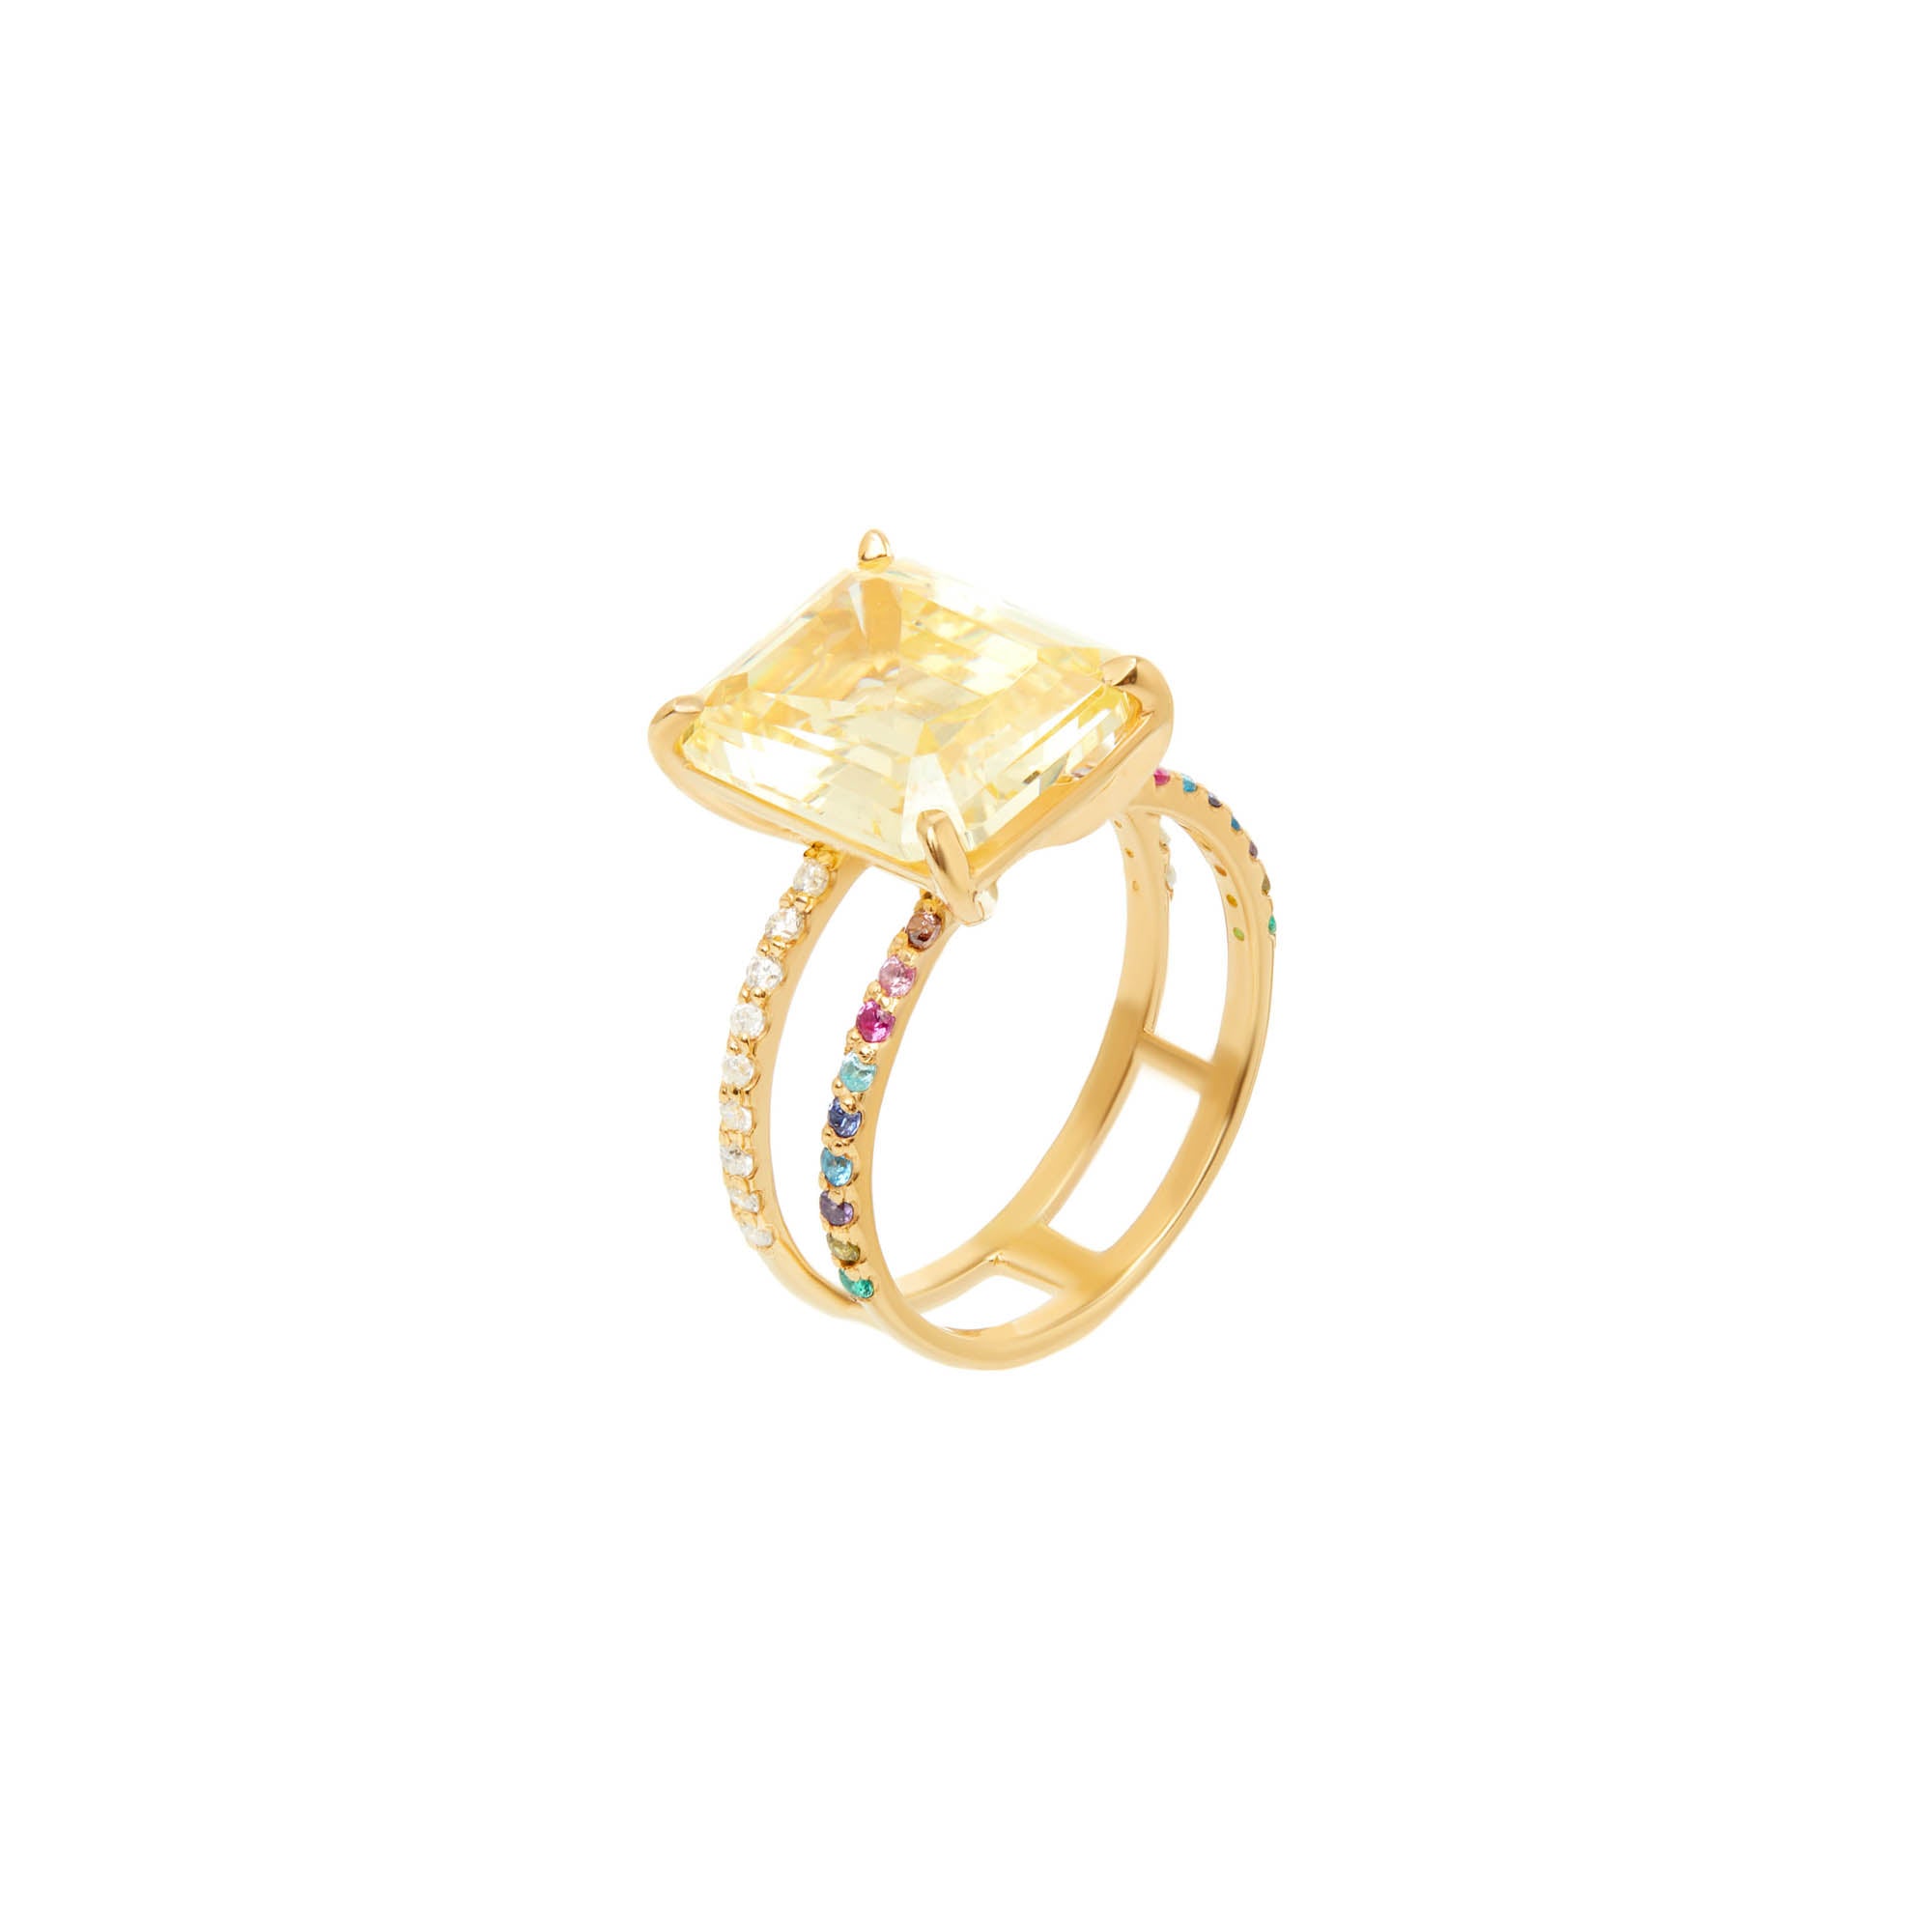 Ring 'Shine Bright' – Yellow